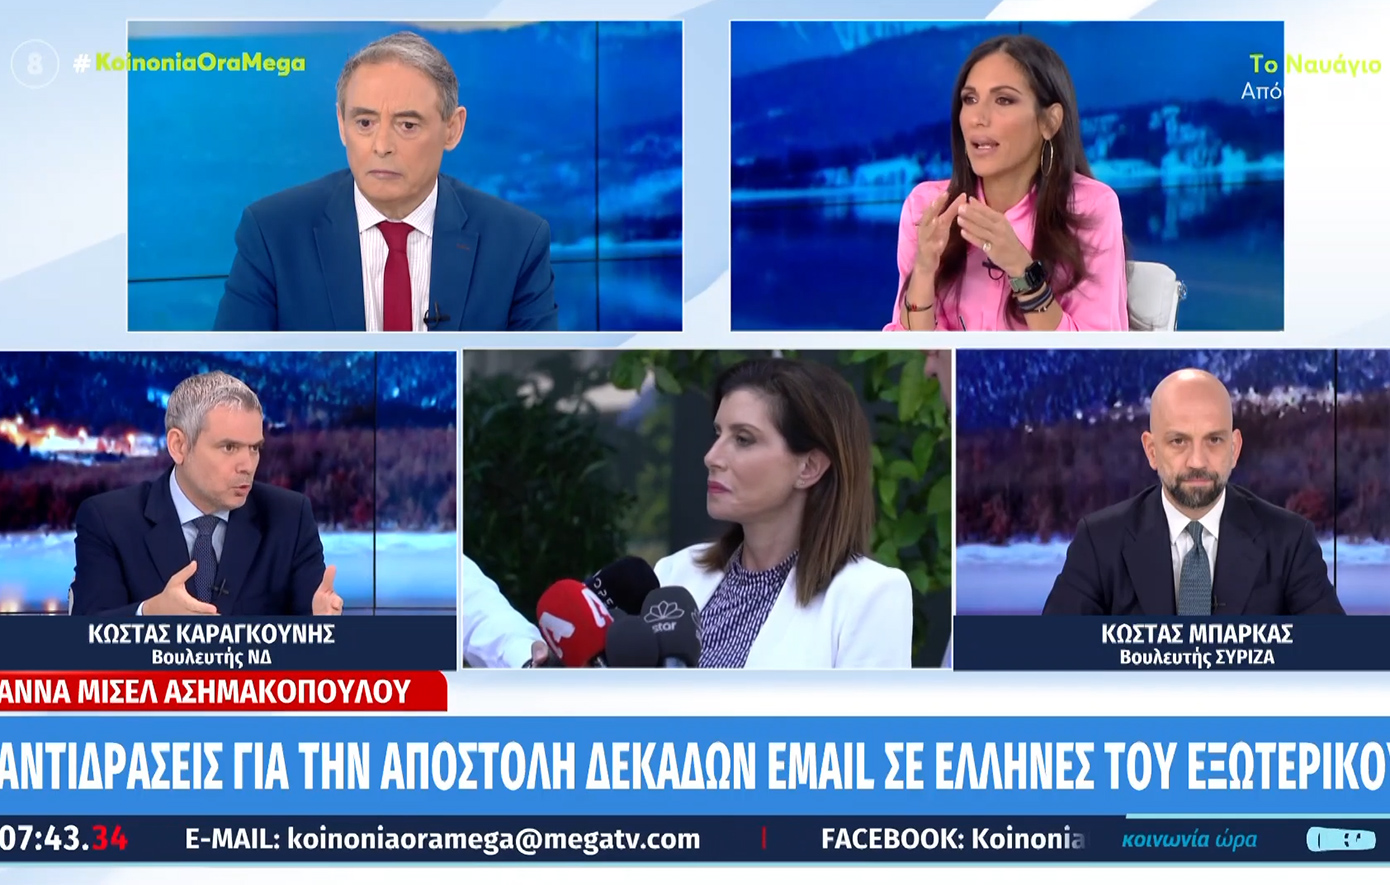 Πολιτική αντιπαράθεση για τα e-mails της Άννας Μισέλ Ασημακοπούλου